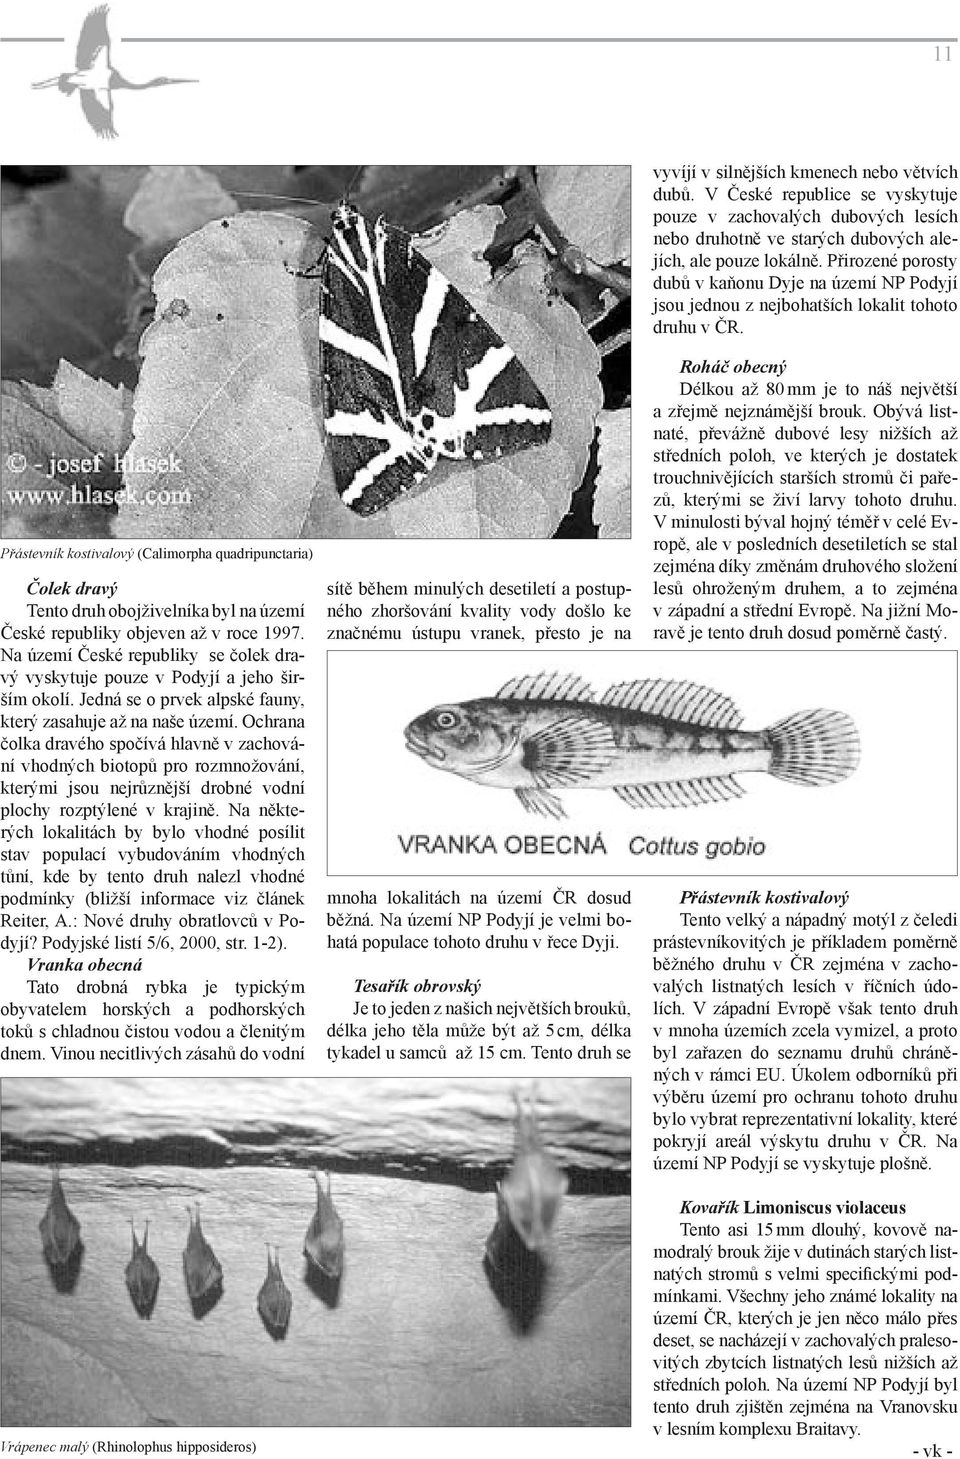 Přástevník kostivalový (Calimorpha quadripunctaria) Čolek dravý Tento druh obojživelníka byl na území České republiky objeven až v roce 1997.